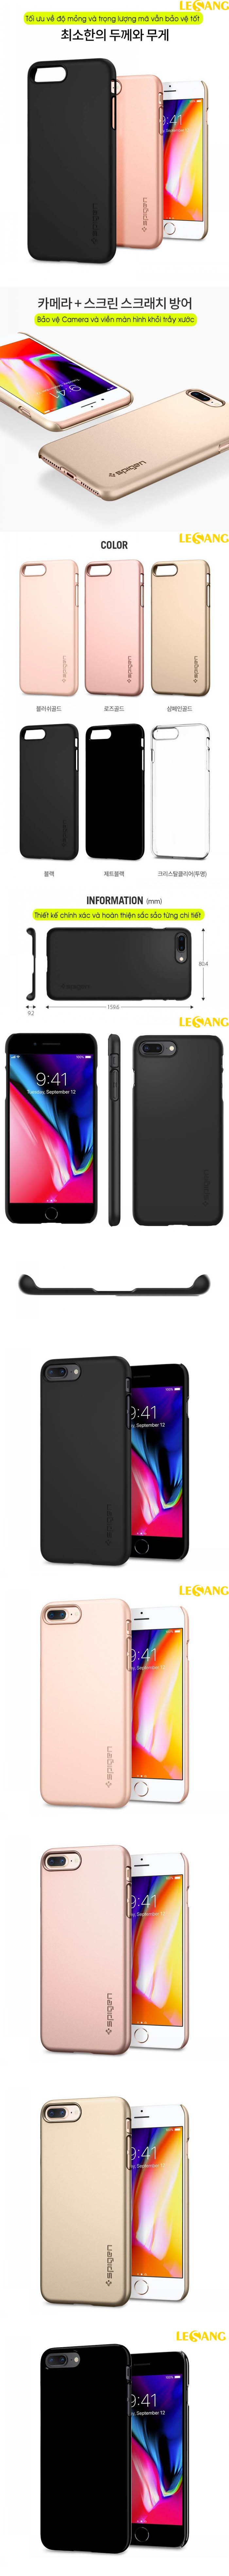 Ốp lưng iPhone 8 Plus Spigen Thin Fit siêu nhẹ 253